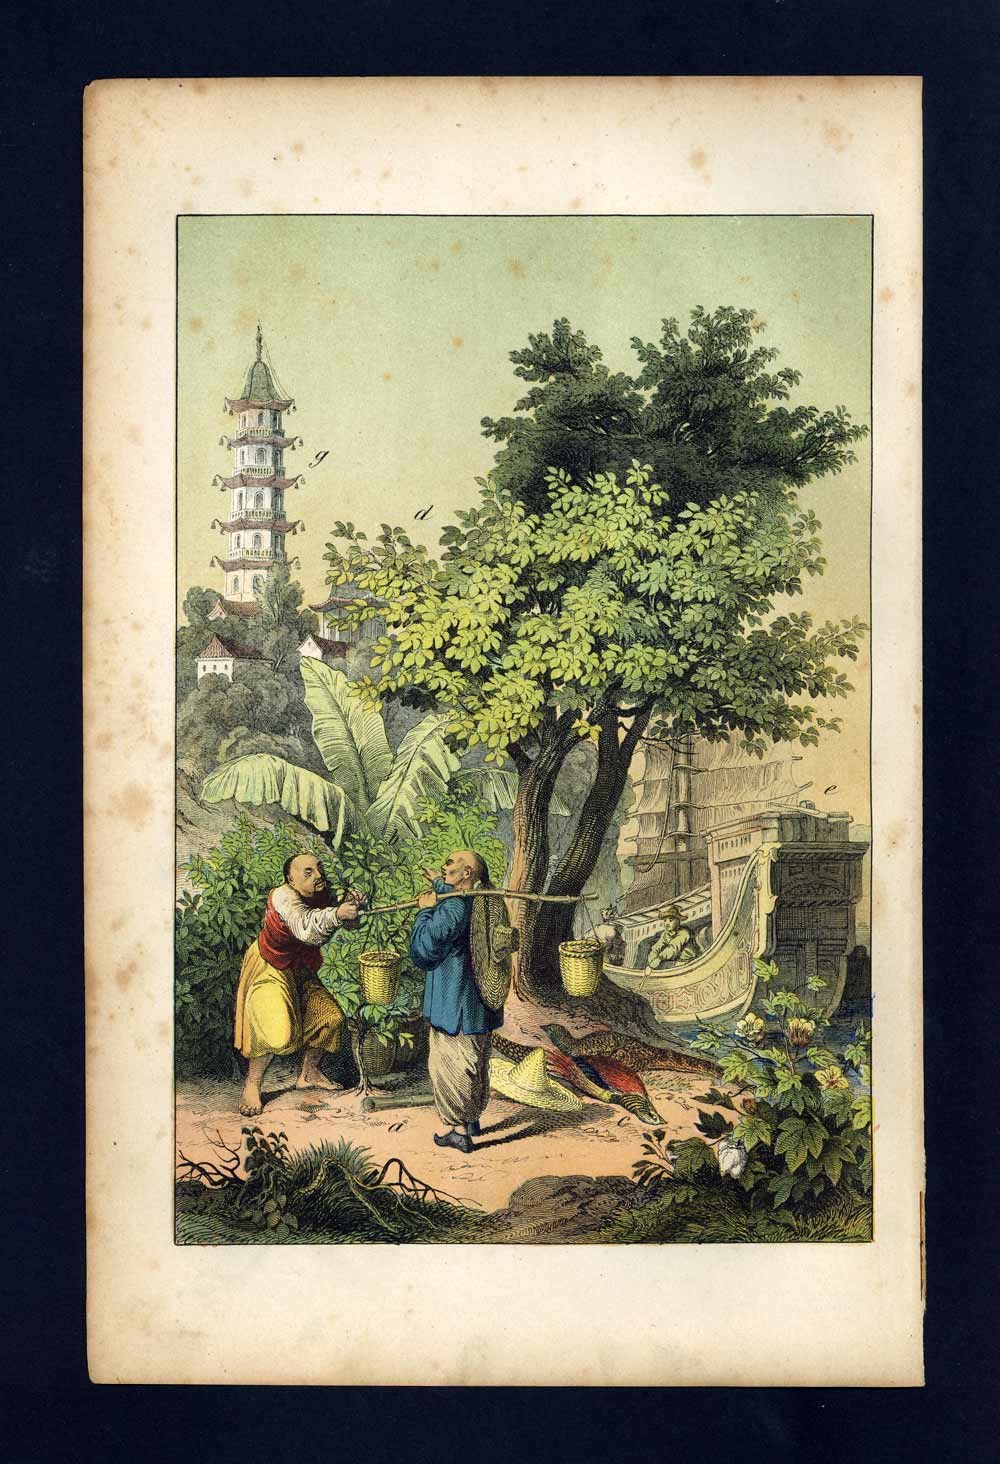 LA CHINE, FAISAN DORÉ, JONQUE, ARBRE A THÉ gravure Histoire naturelle 1880 